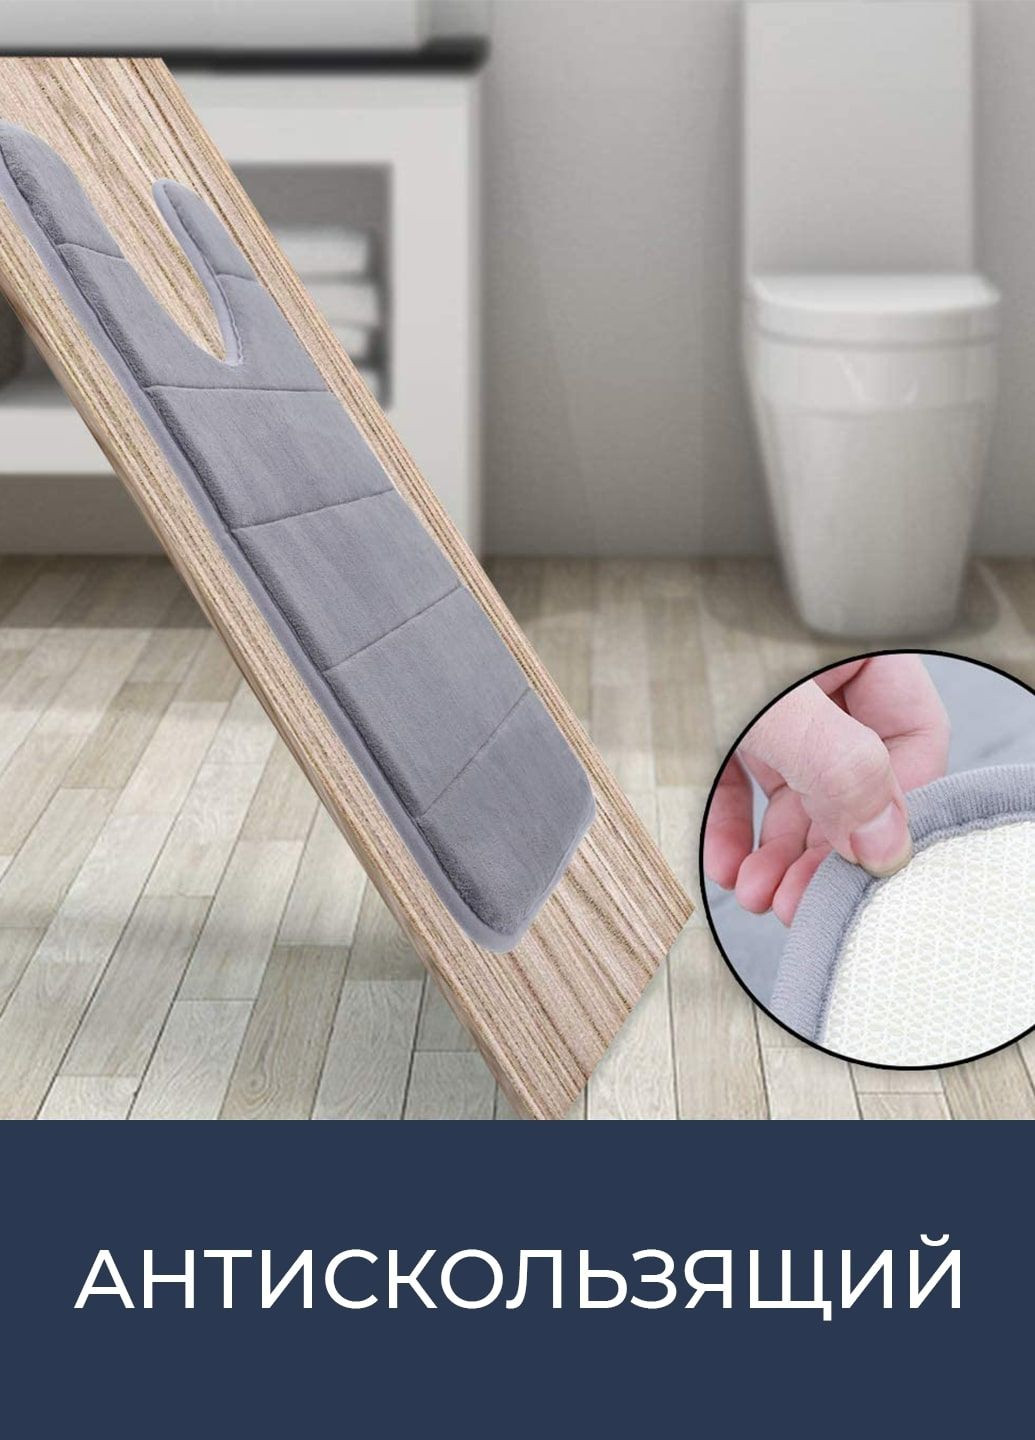 Сучасний килимок для туалету з ефектом пам'яті - U-контурний килимок 50 х 50 см Сірий - Антиковзаючий, м'який, водопоглинаючий Aquarius (281327214)